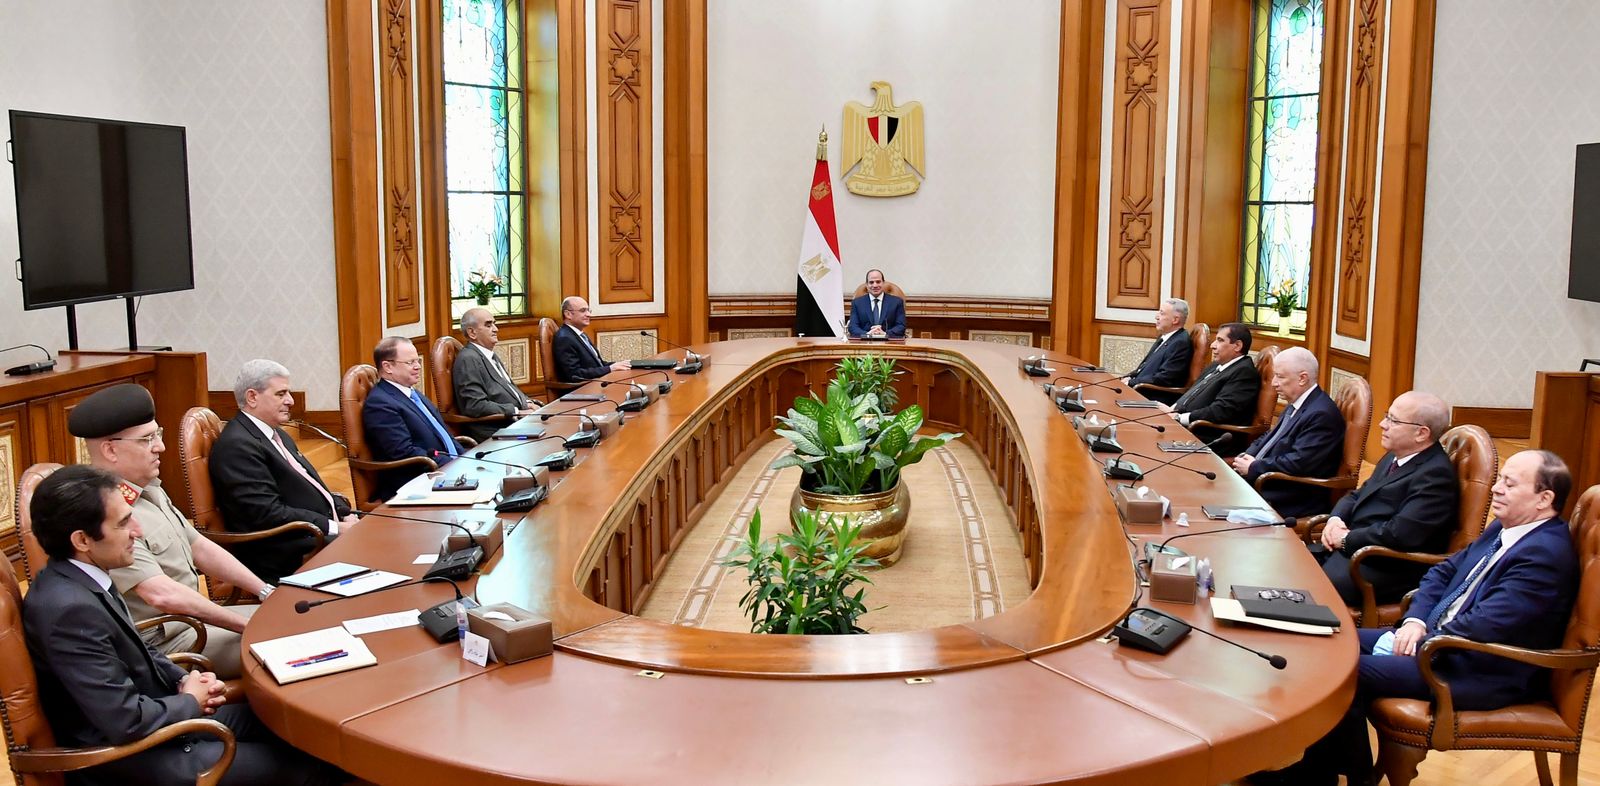 اجتماع الرئيس السيسي بأعضاء المجلس الأعلى للهيئات القضائية